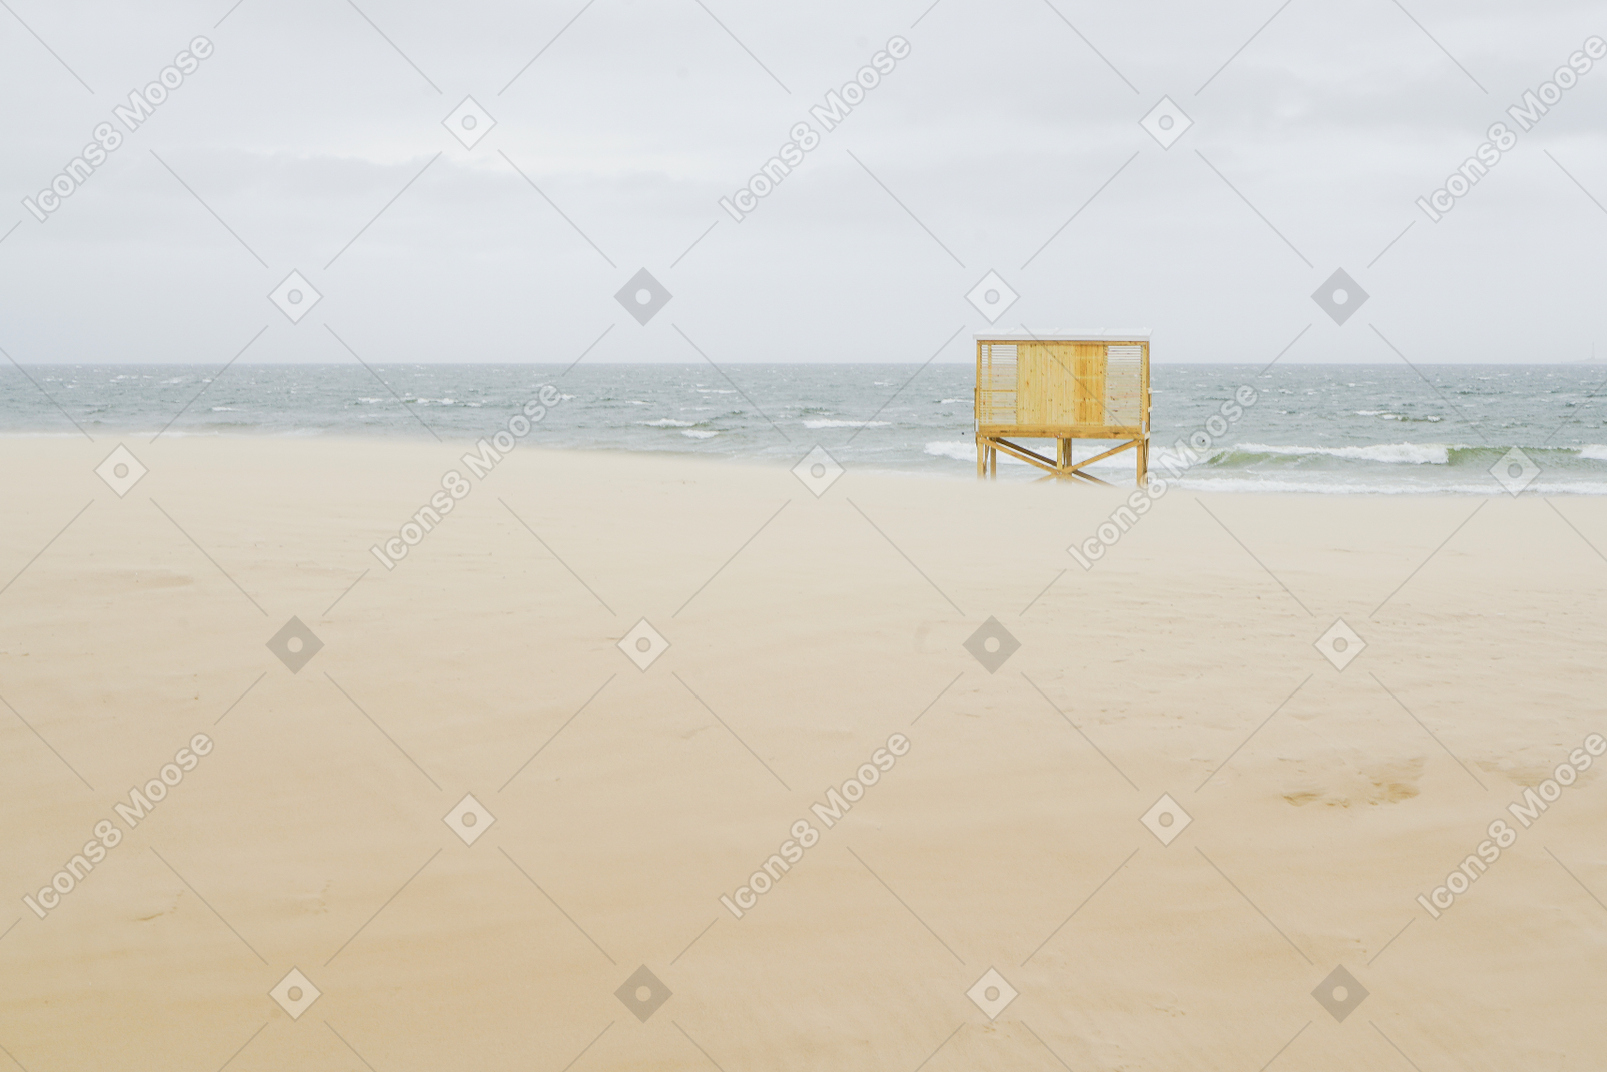 Bord de mer avec une cabane de plage jaune